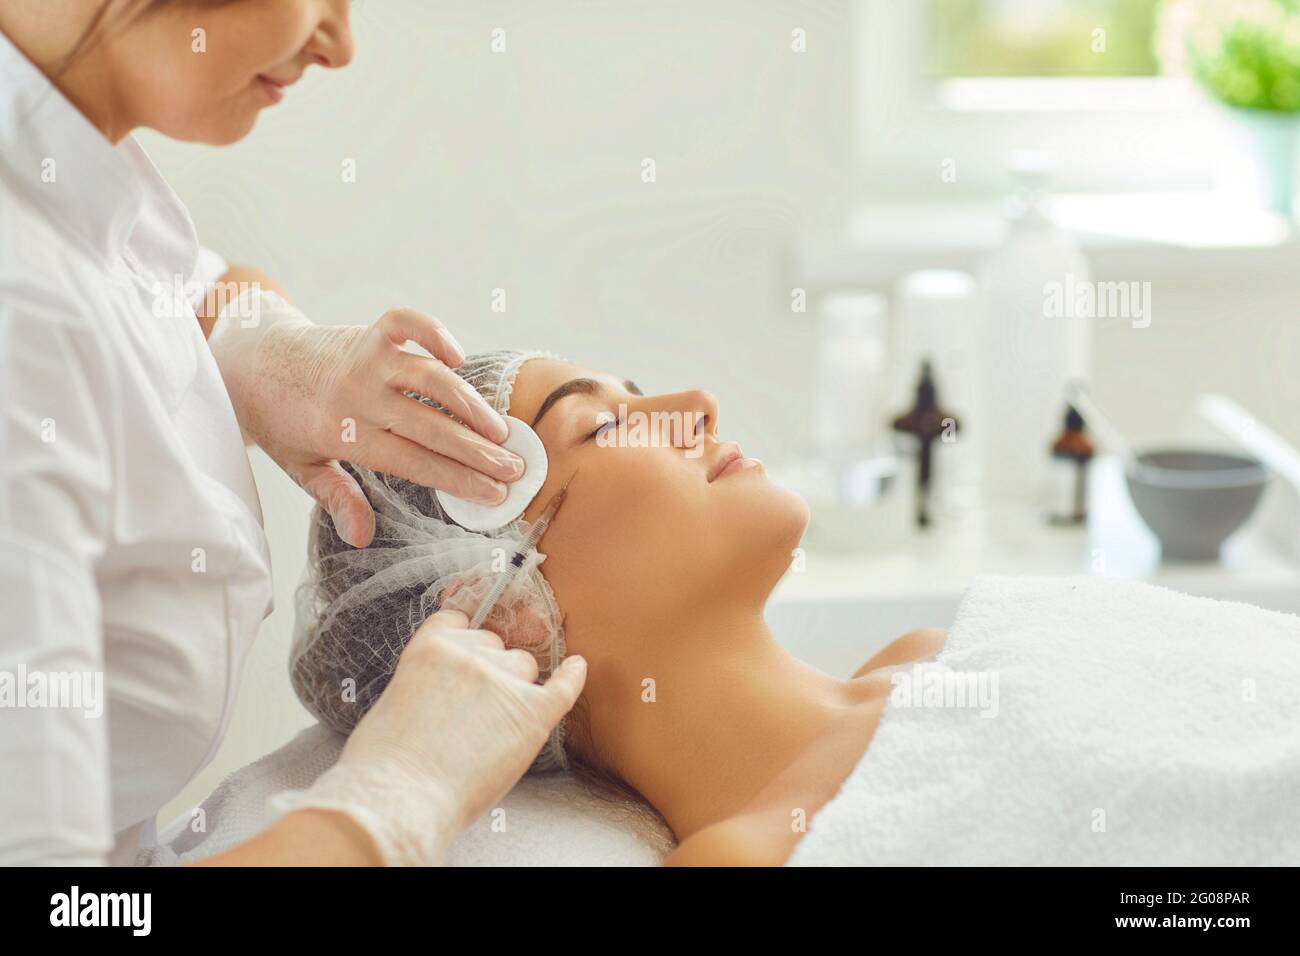 Donna sorridente che ottiene bellezza botox anti-invecchiamento iniezione della pelle a guancia da dermatologist professionale Foto Stock